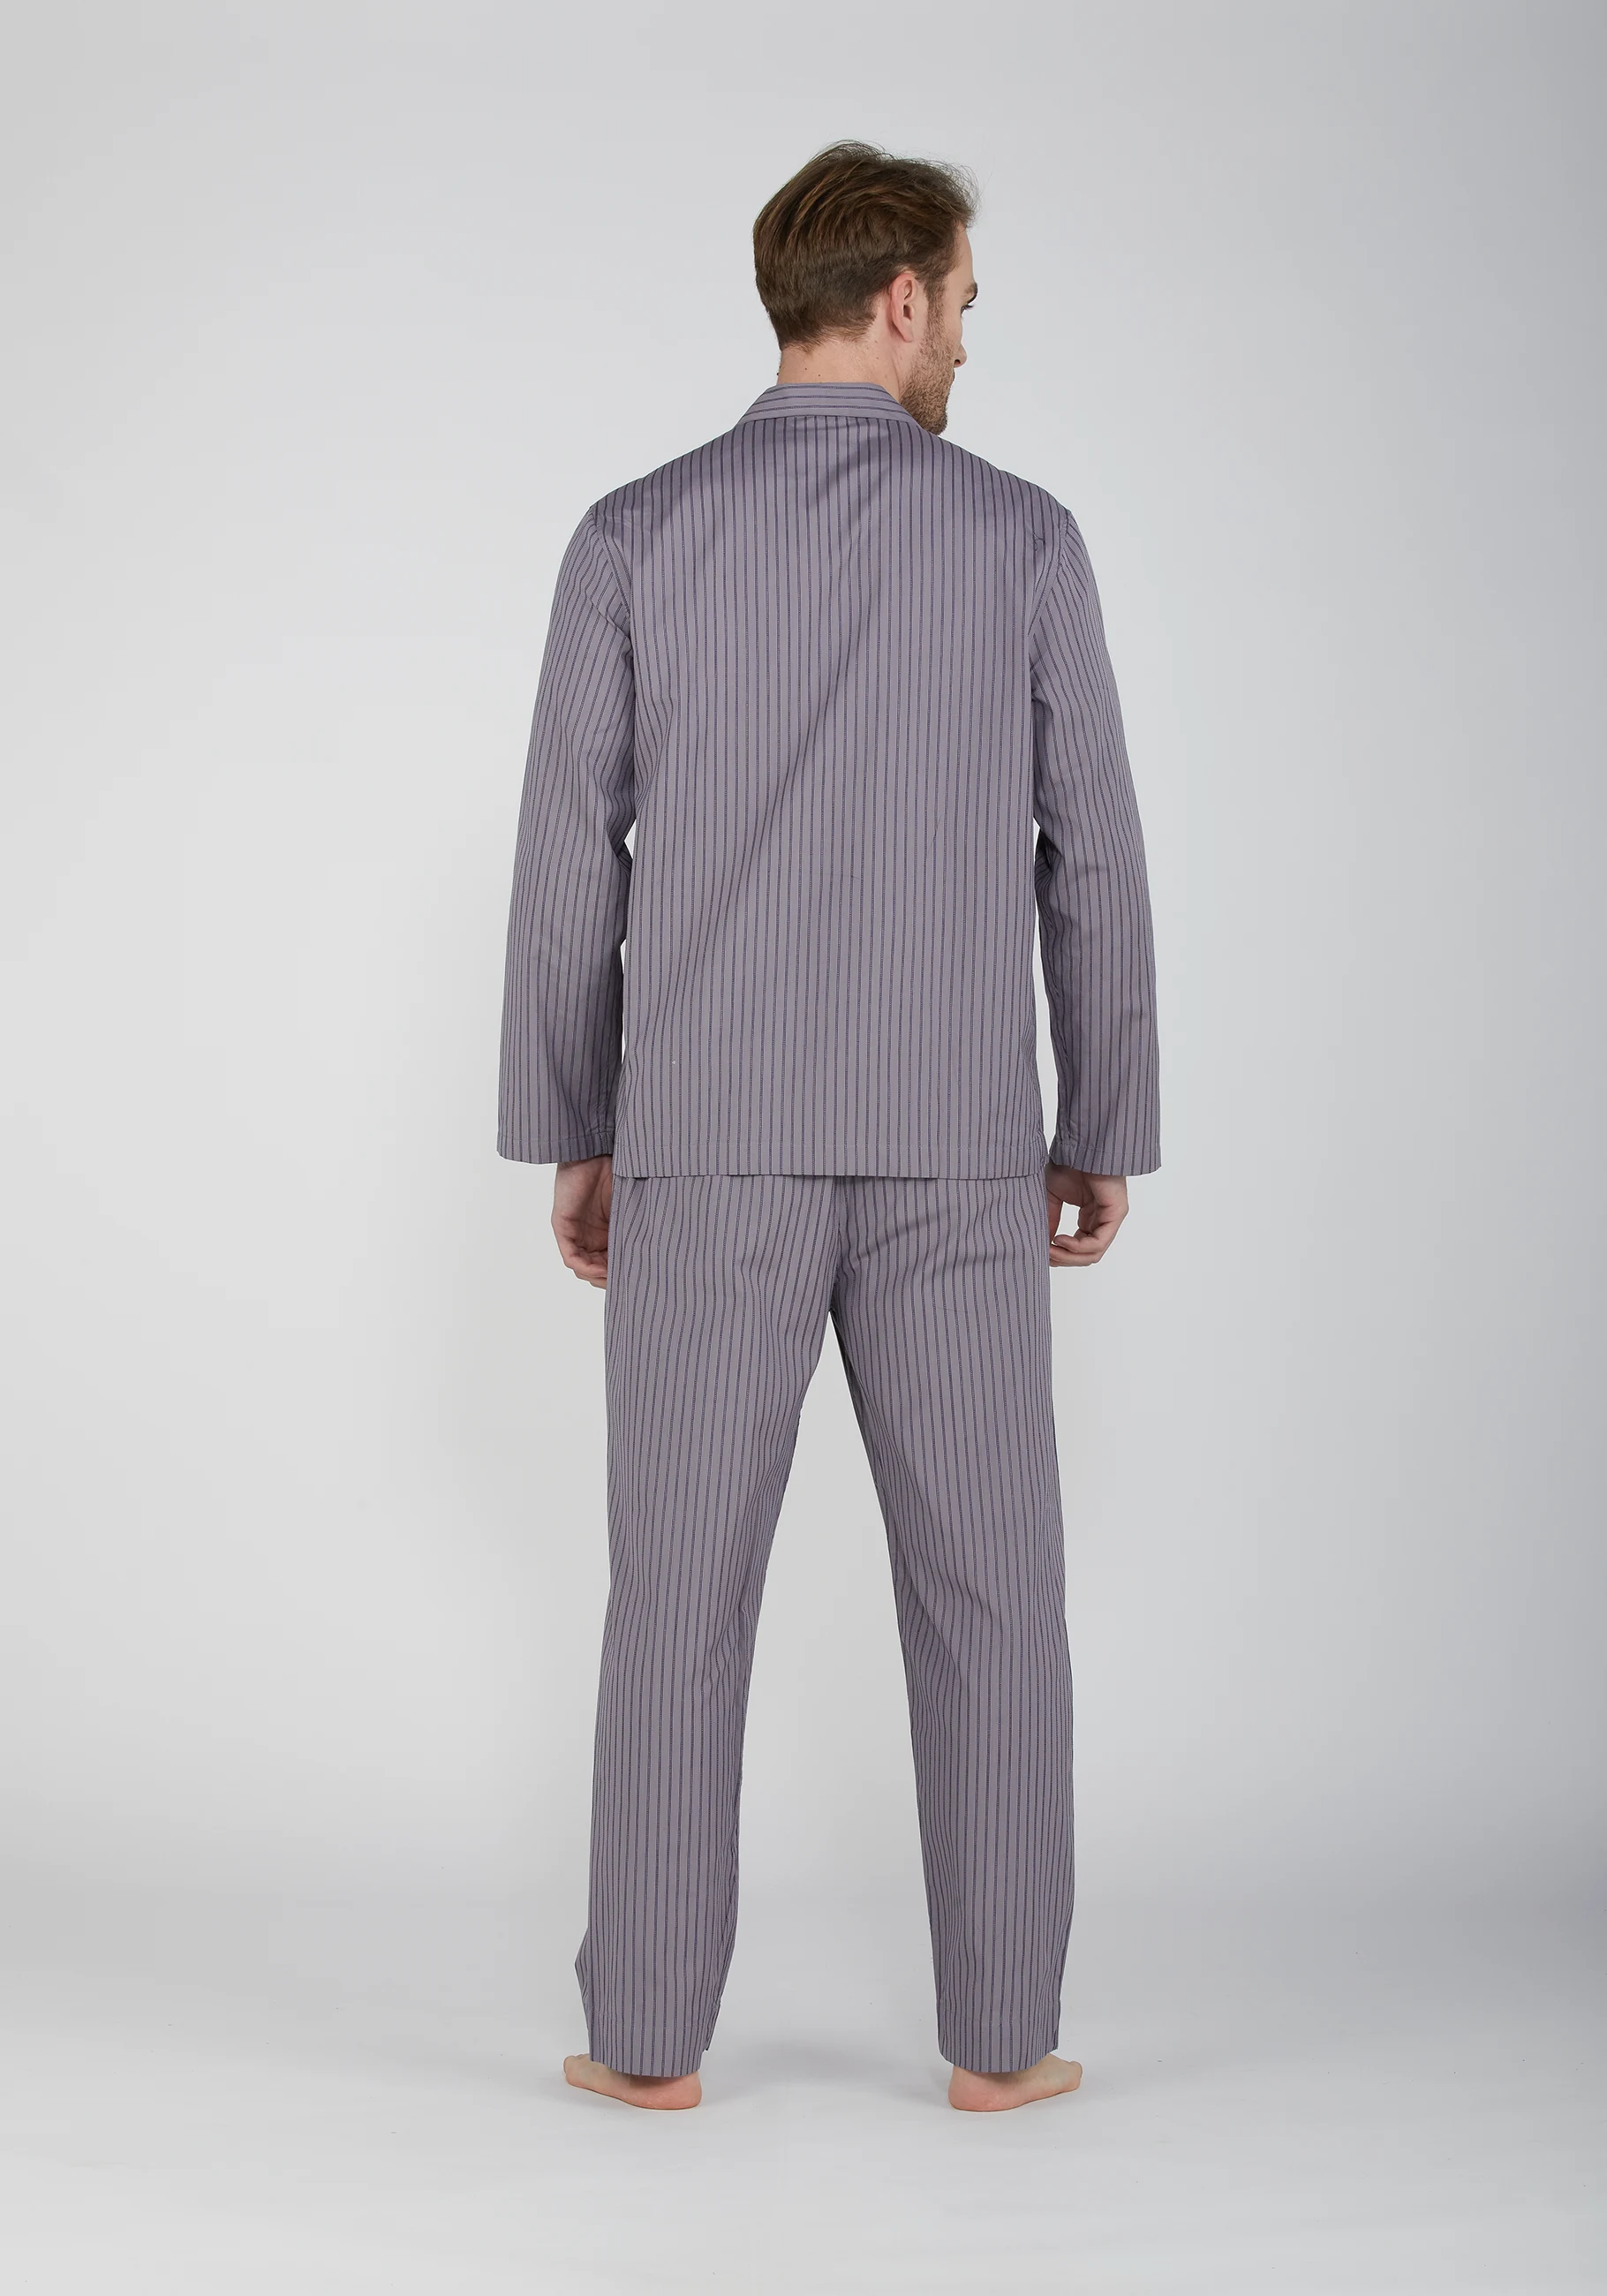 pigiama uomo in cotone tinto in filo con collo a camicia e bottoni